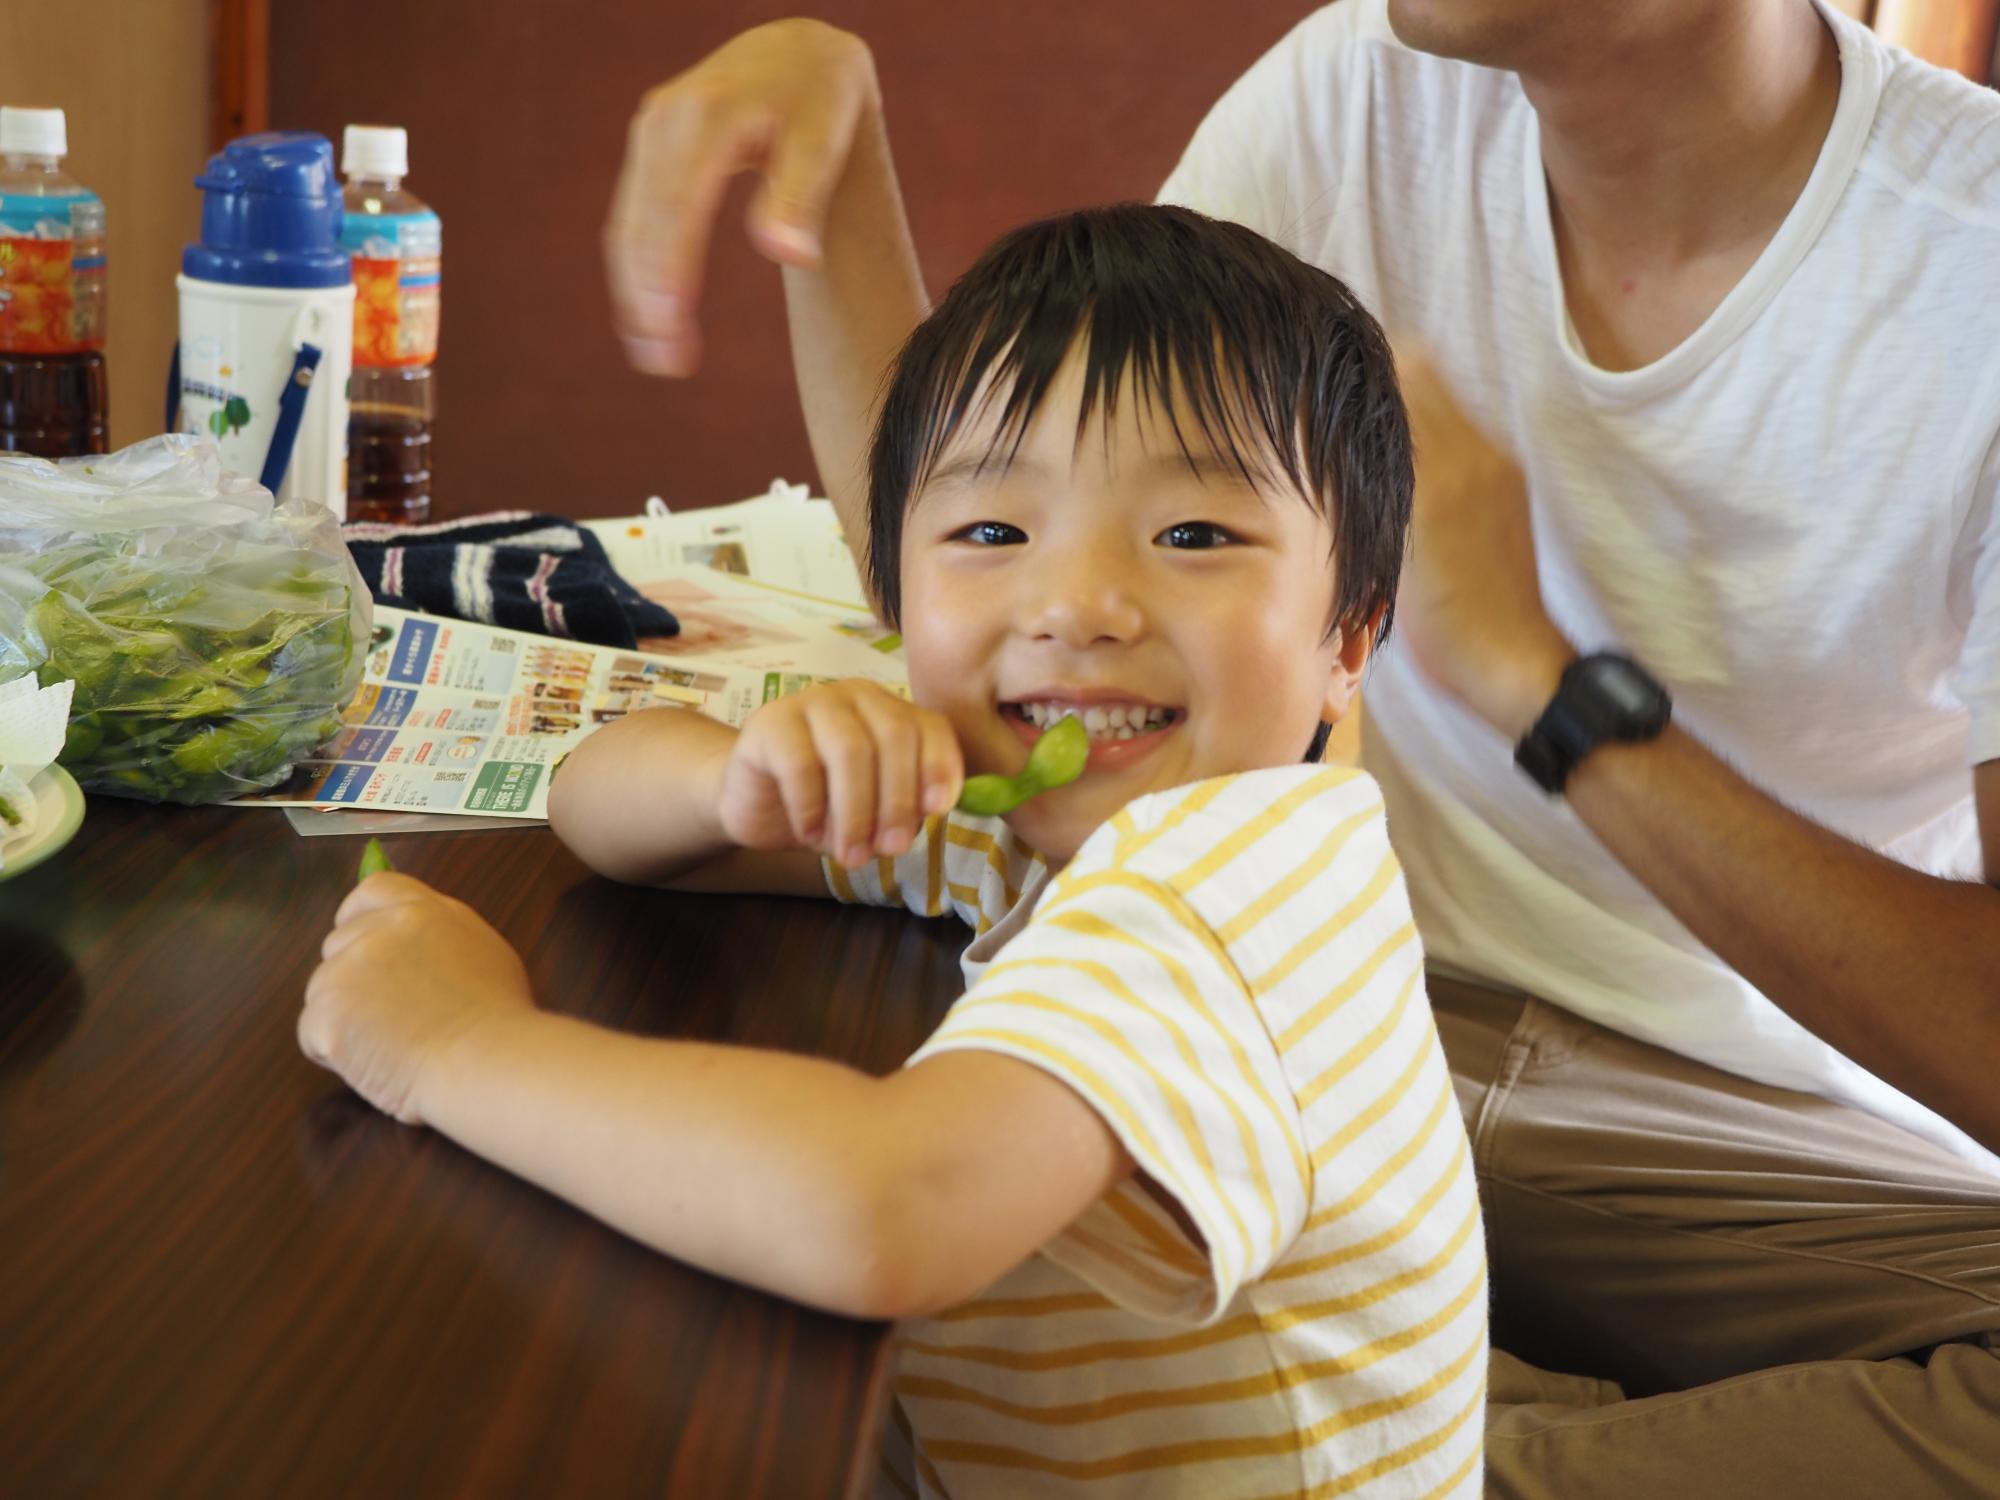 参加者+の子供が試食用の枝豆を食べている写真